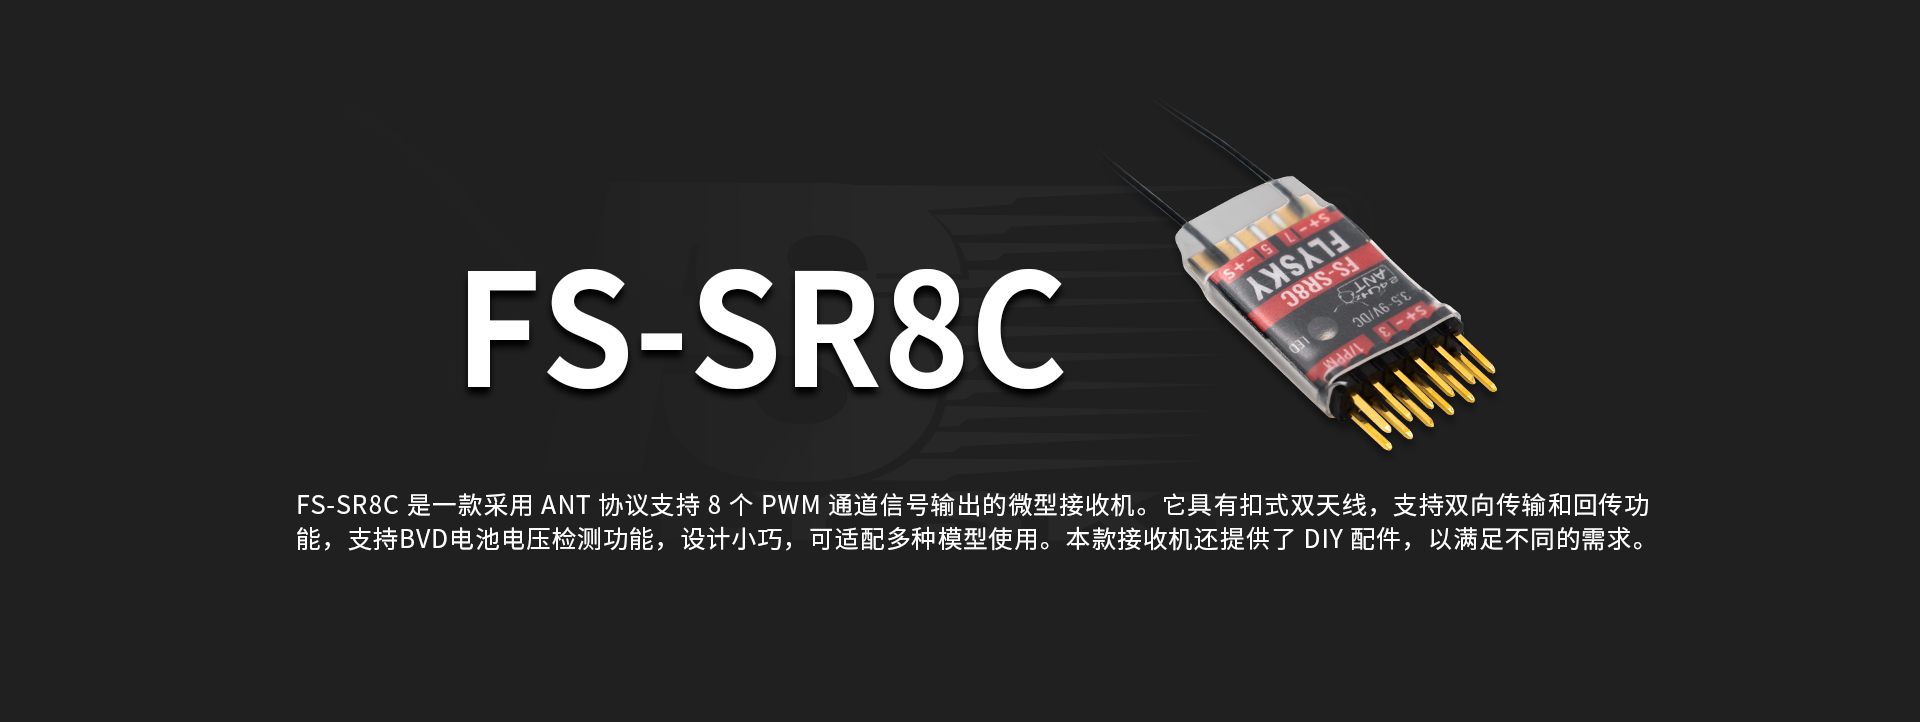 FS-SR8C